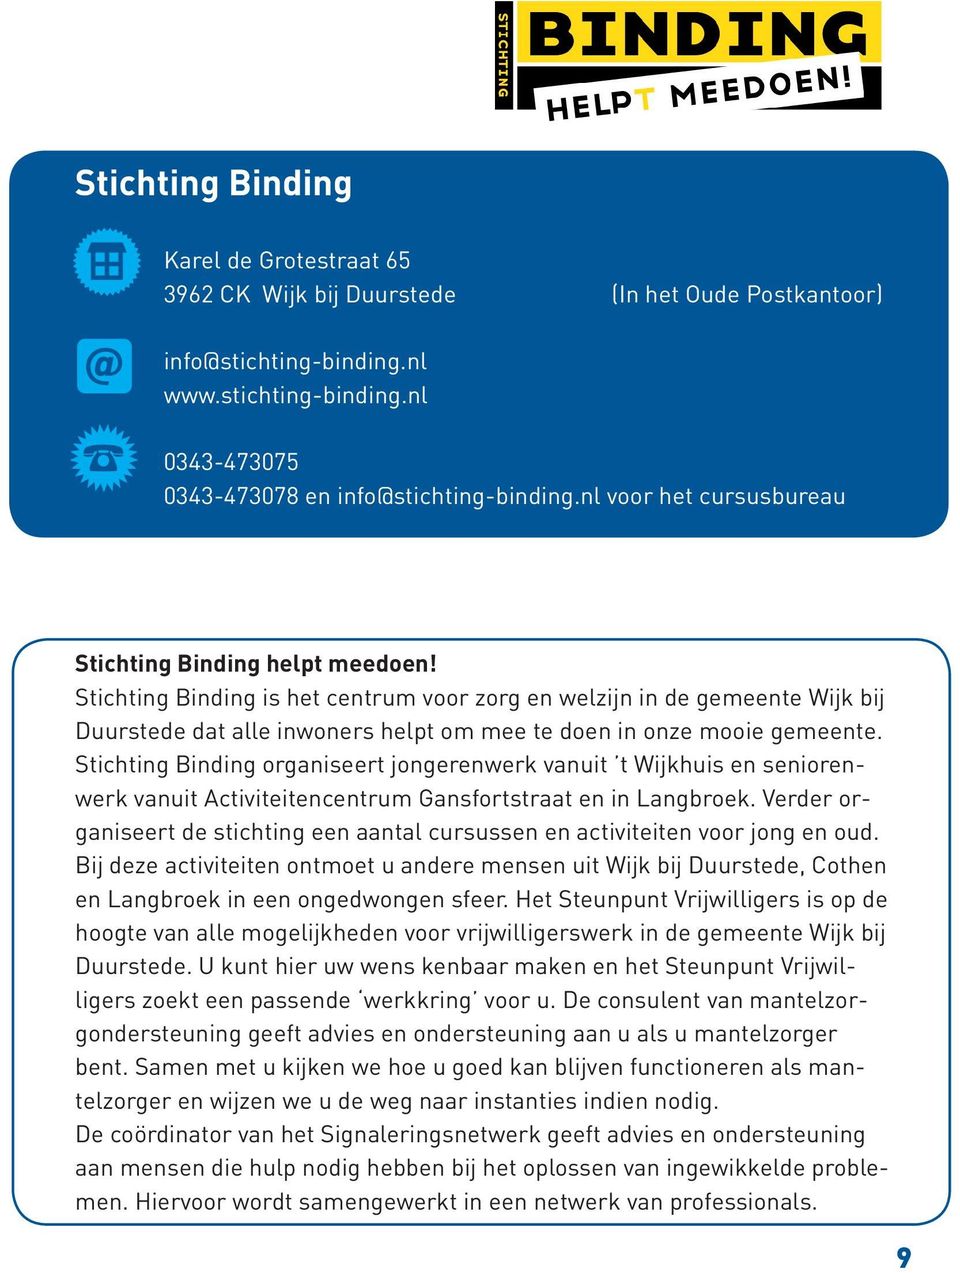 Stichting Binding is het centrum voor zorg en welzijn in de gemeente Wijk bij Duurstede dat alle inwoners helpt om mee te doen in onze mooie gemeente.